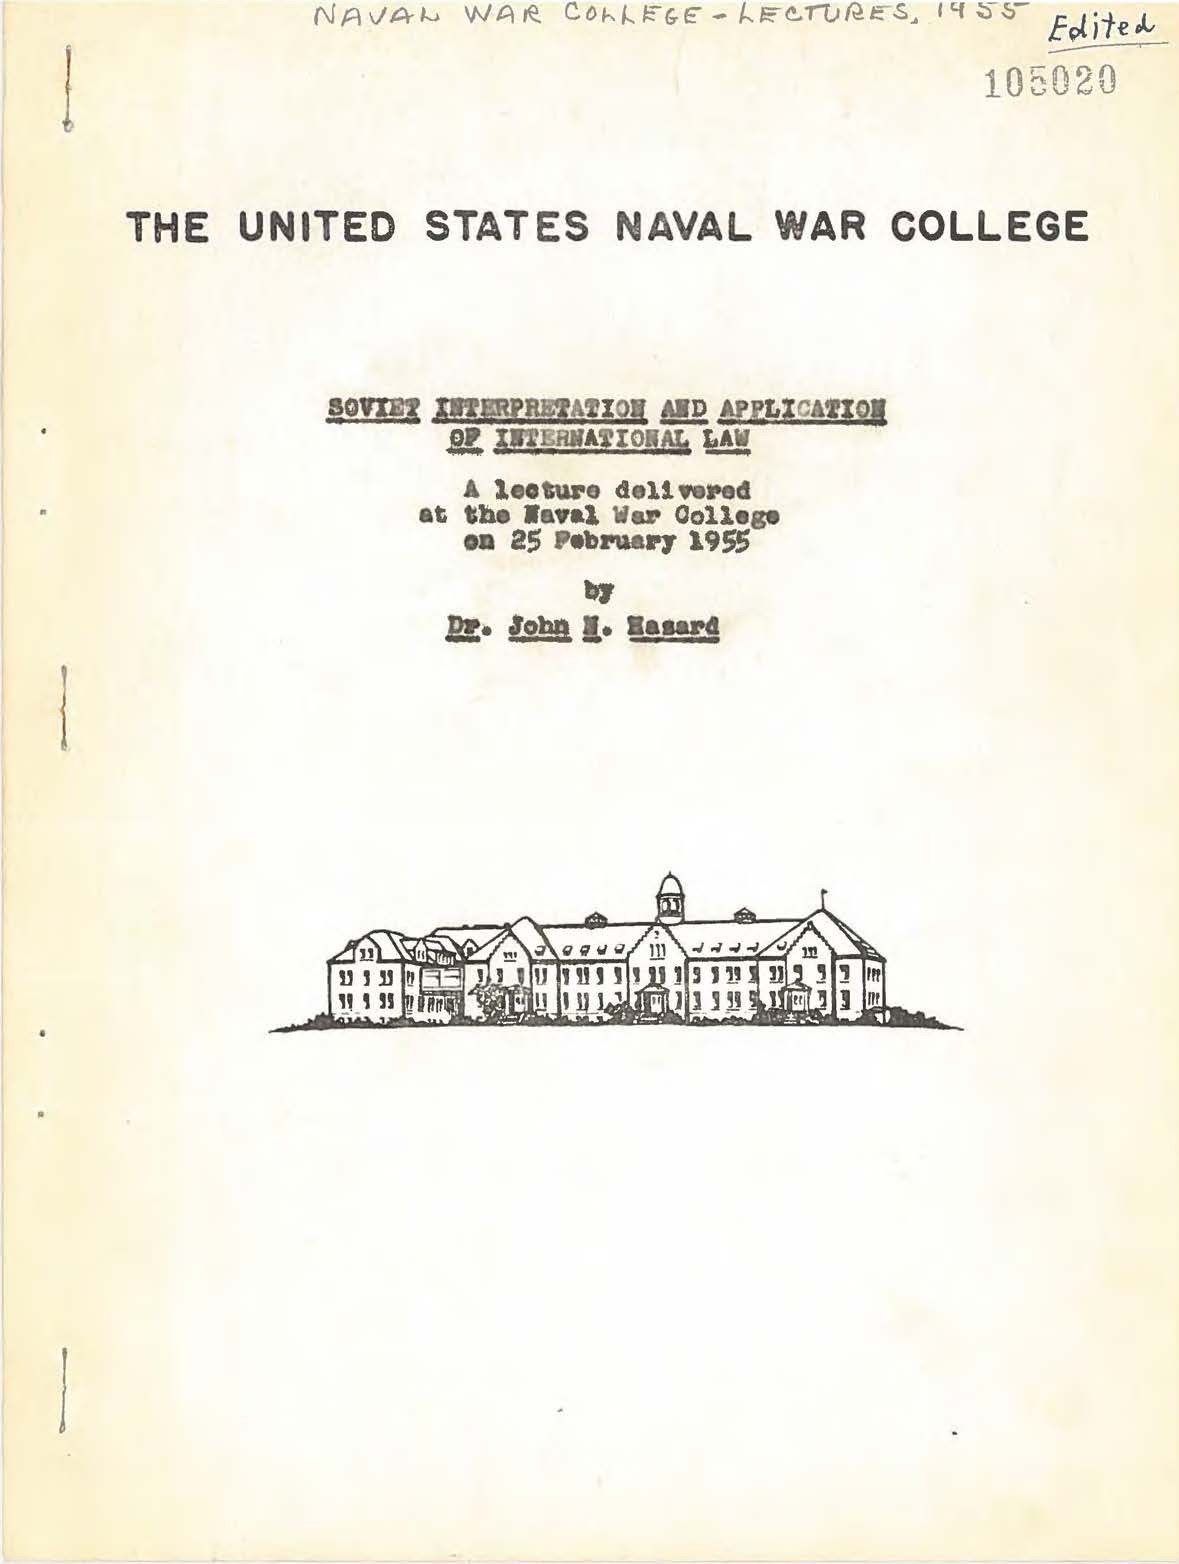 Soviet Interpretation and Application of International Law, John N. Hazard